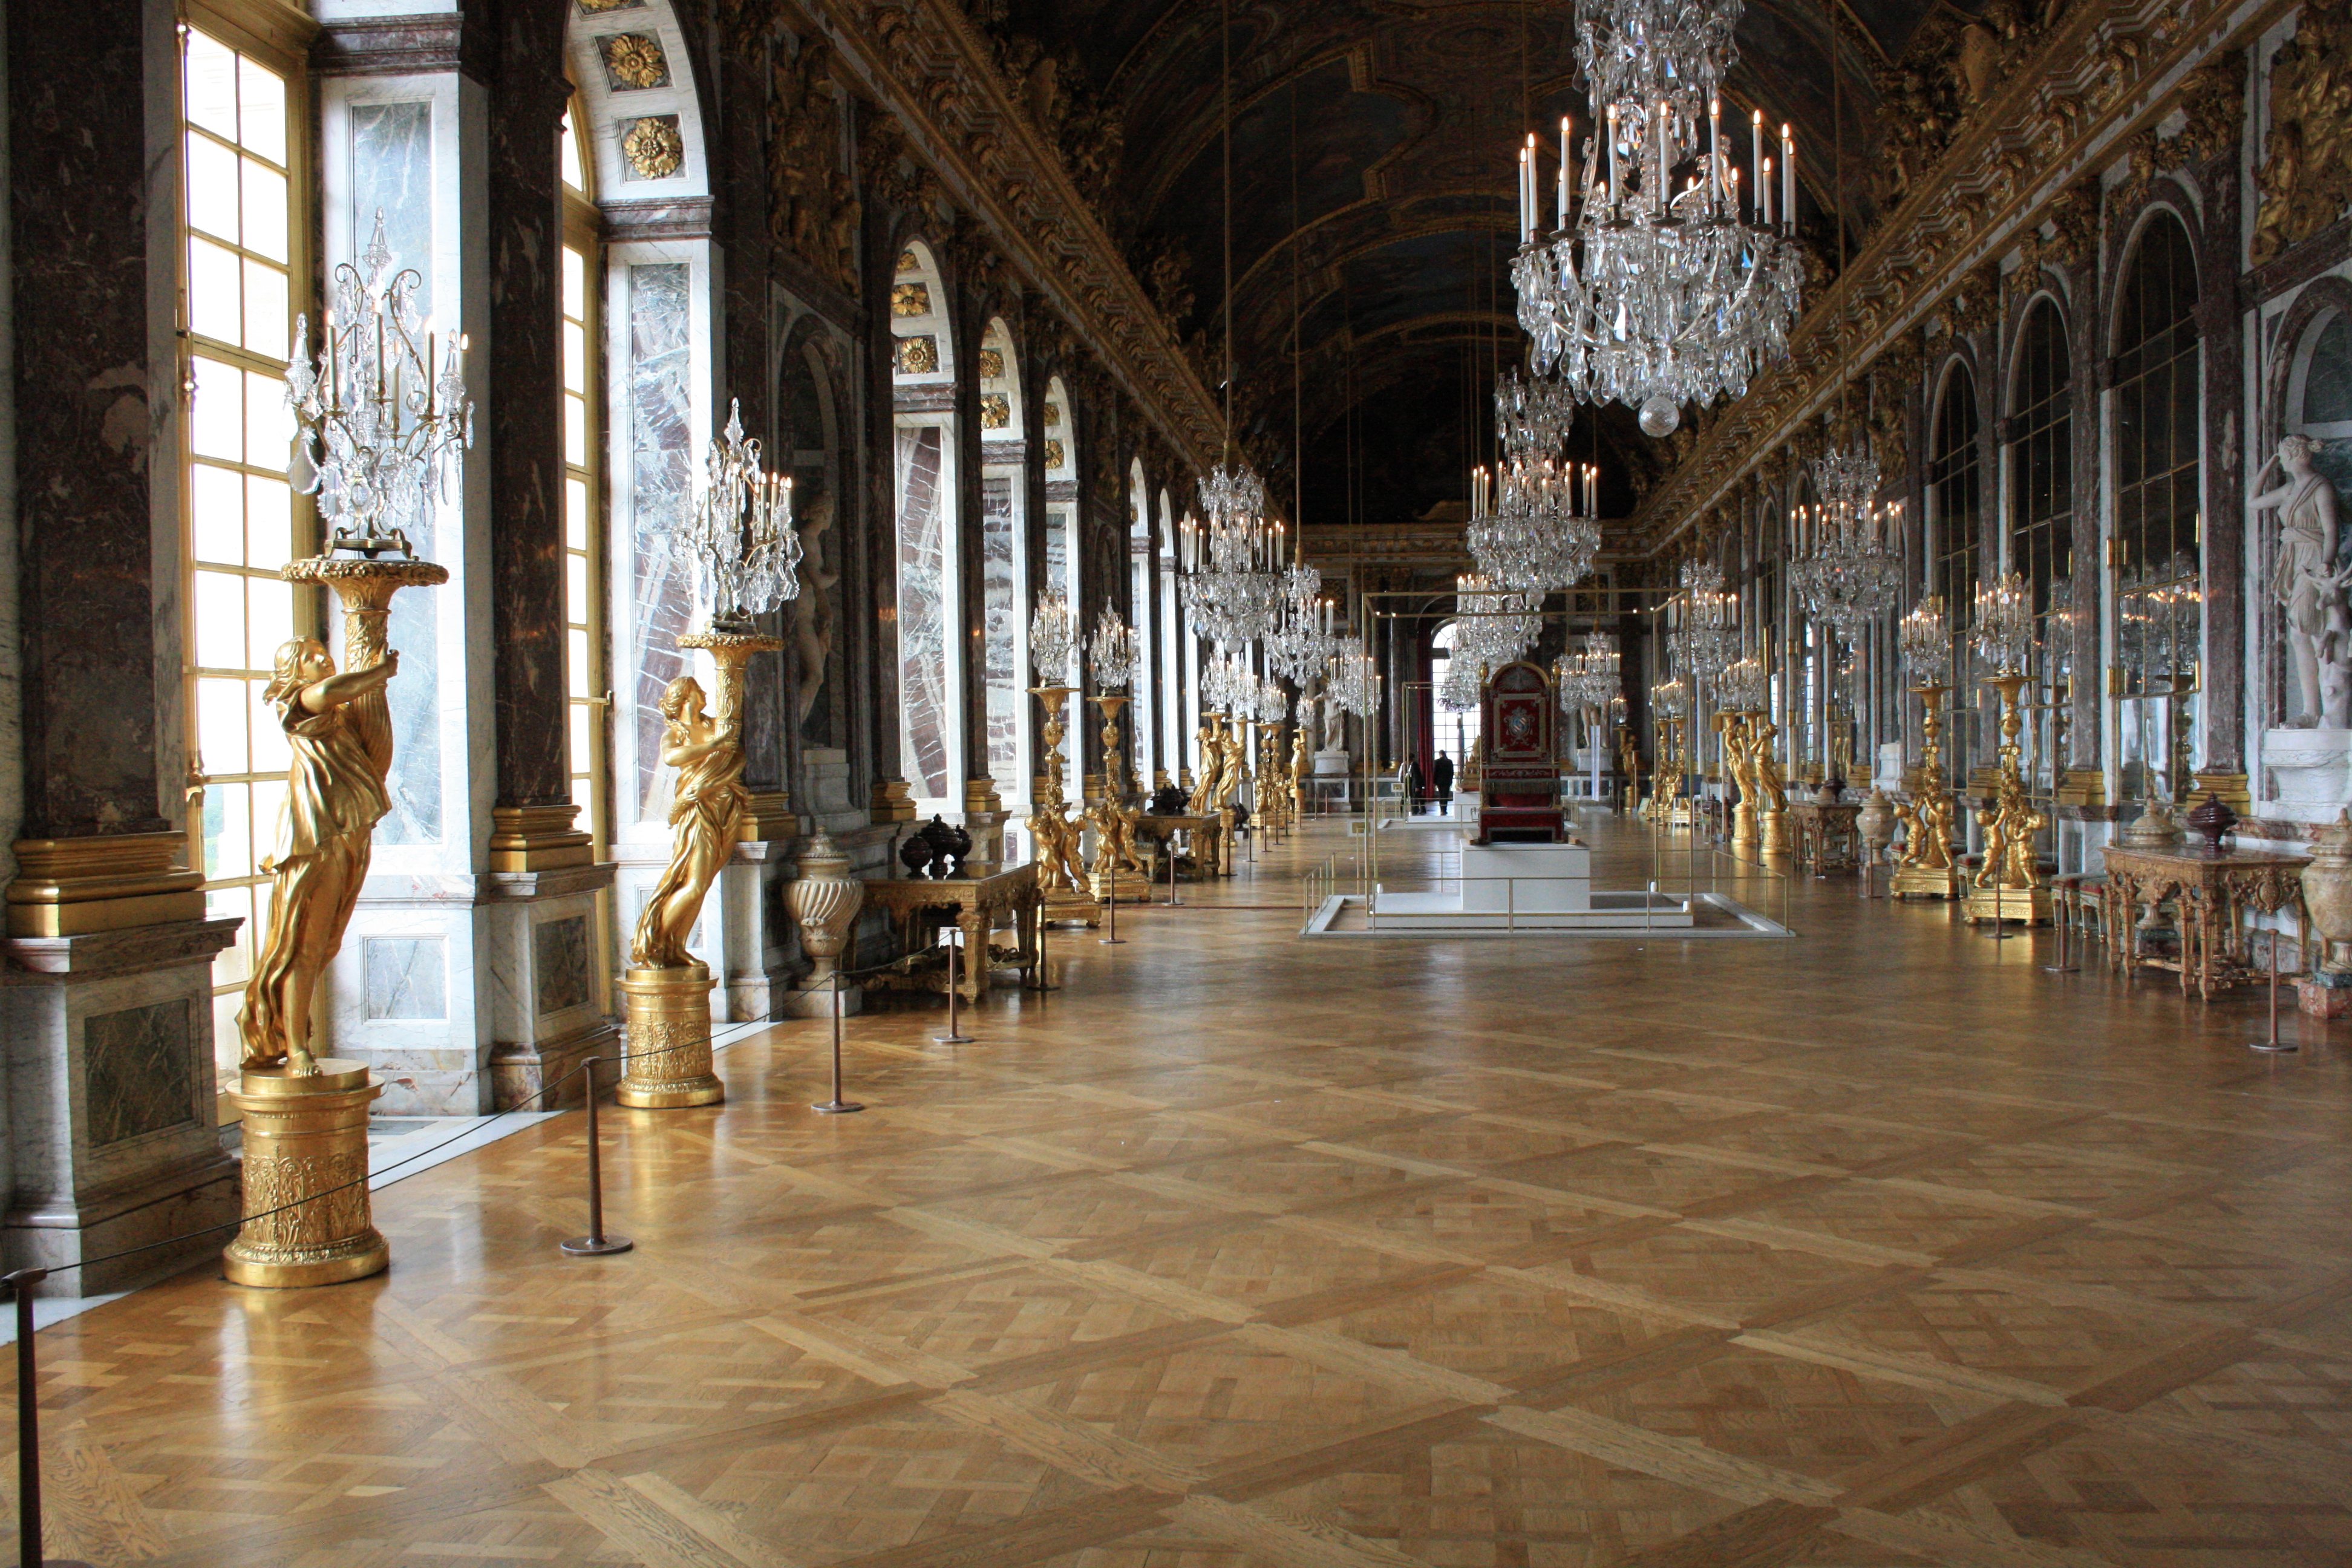 Галереи версаля. Зеркальная галерея Версаль. Версаль Франция зеркальная галерея. Версальский дворец внутри зеркальная галерея.